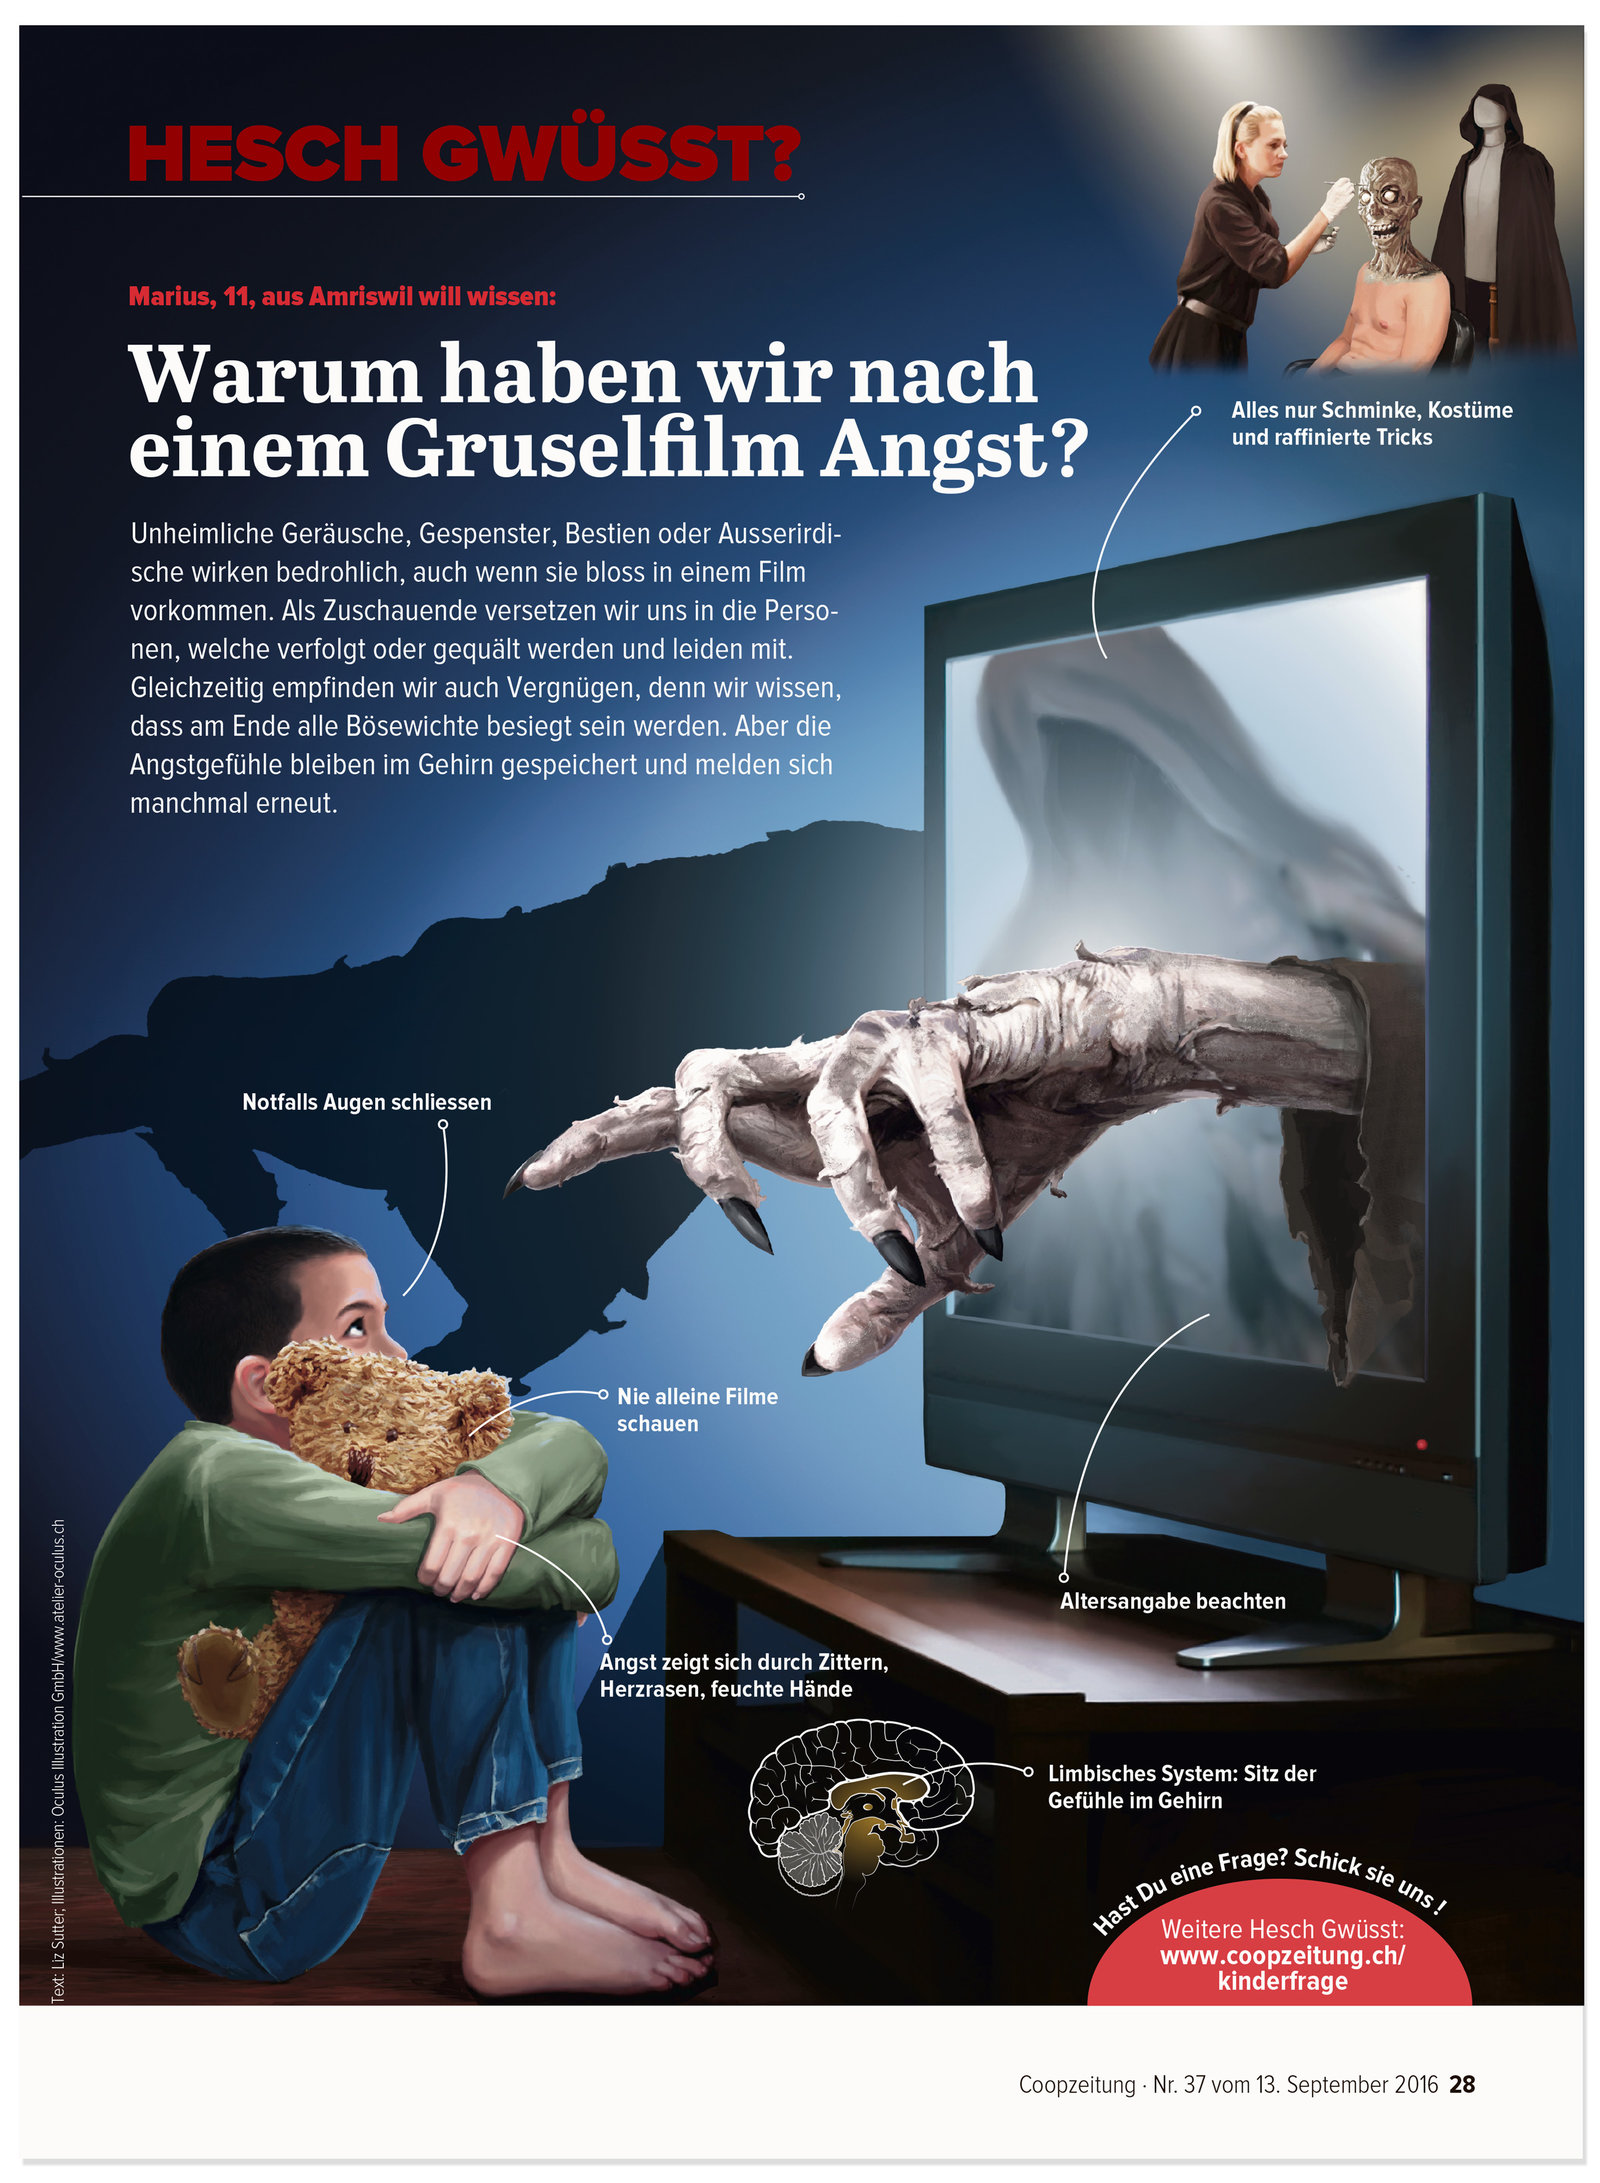 oculus-illustration-coopzeitung-hesch-gwuesst-gruselfilm